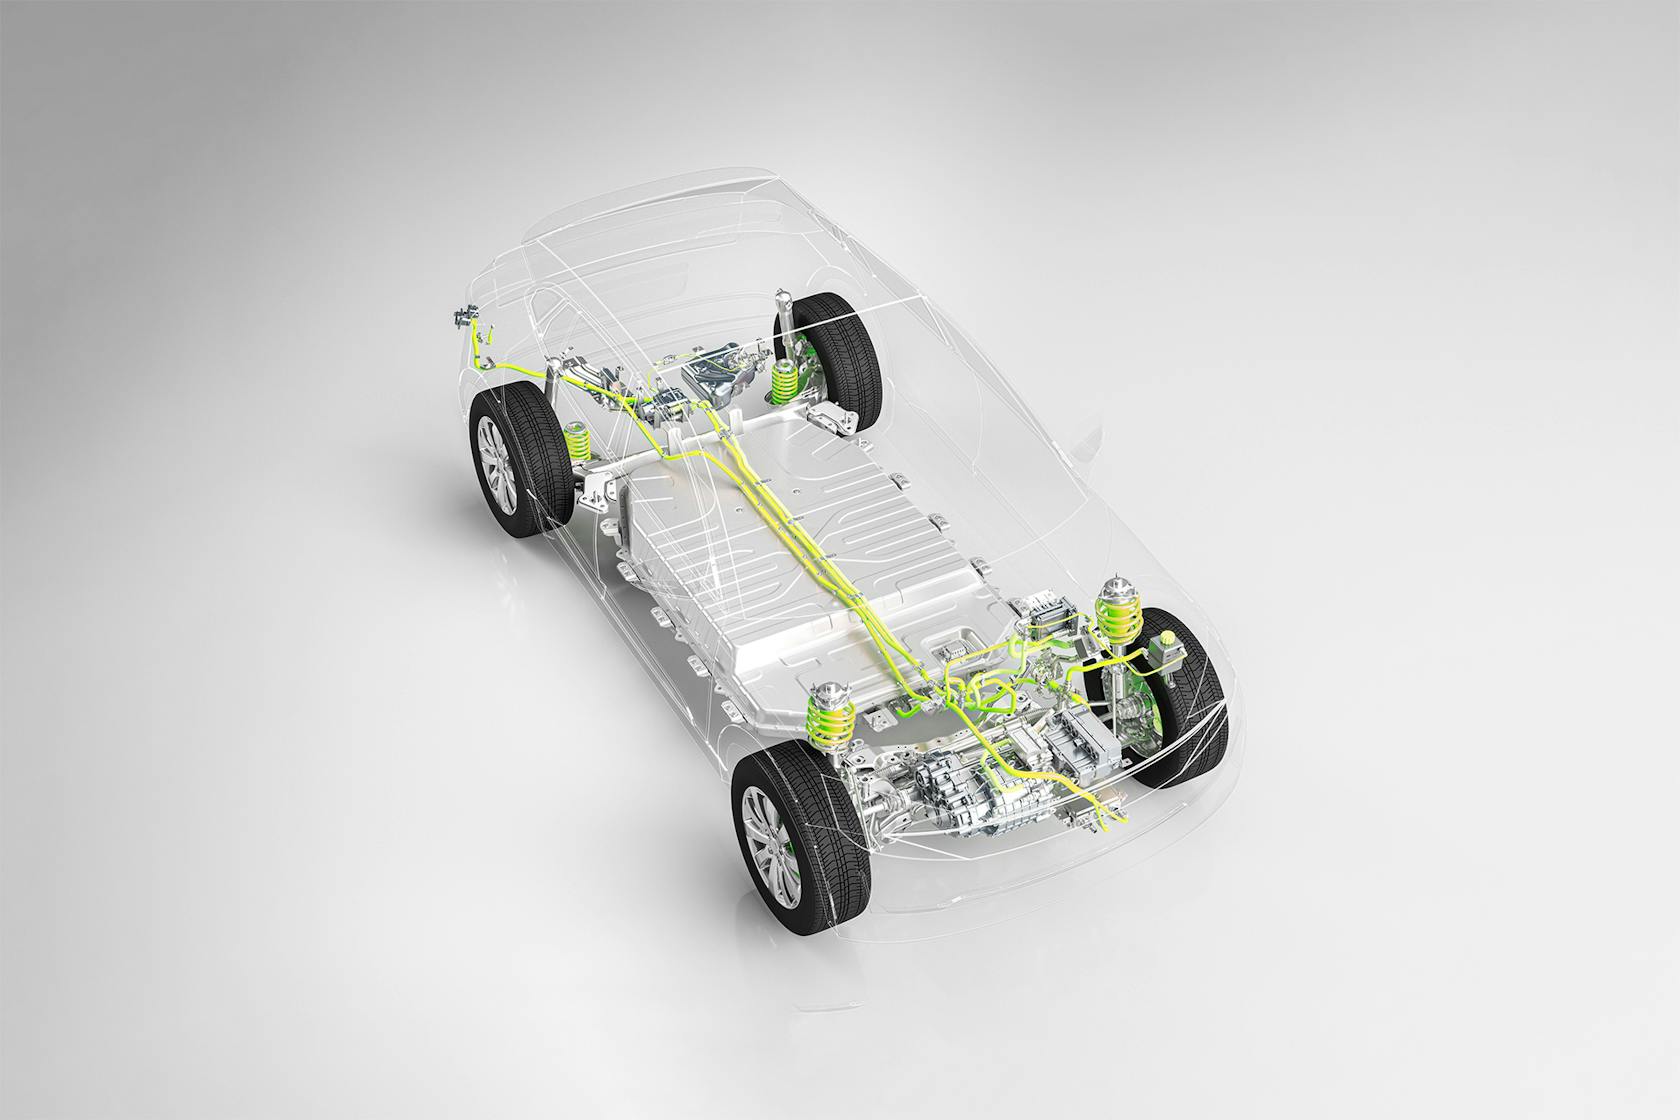 W samochodzie z przeźroczystym nadwoziem widać napęd elektryczny i technologię akumulatorów